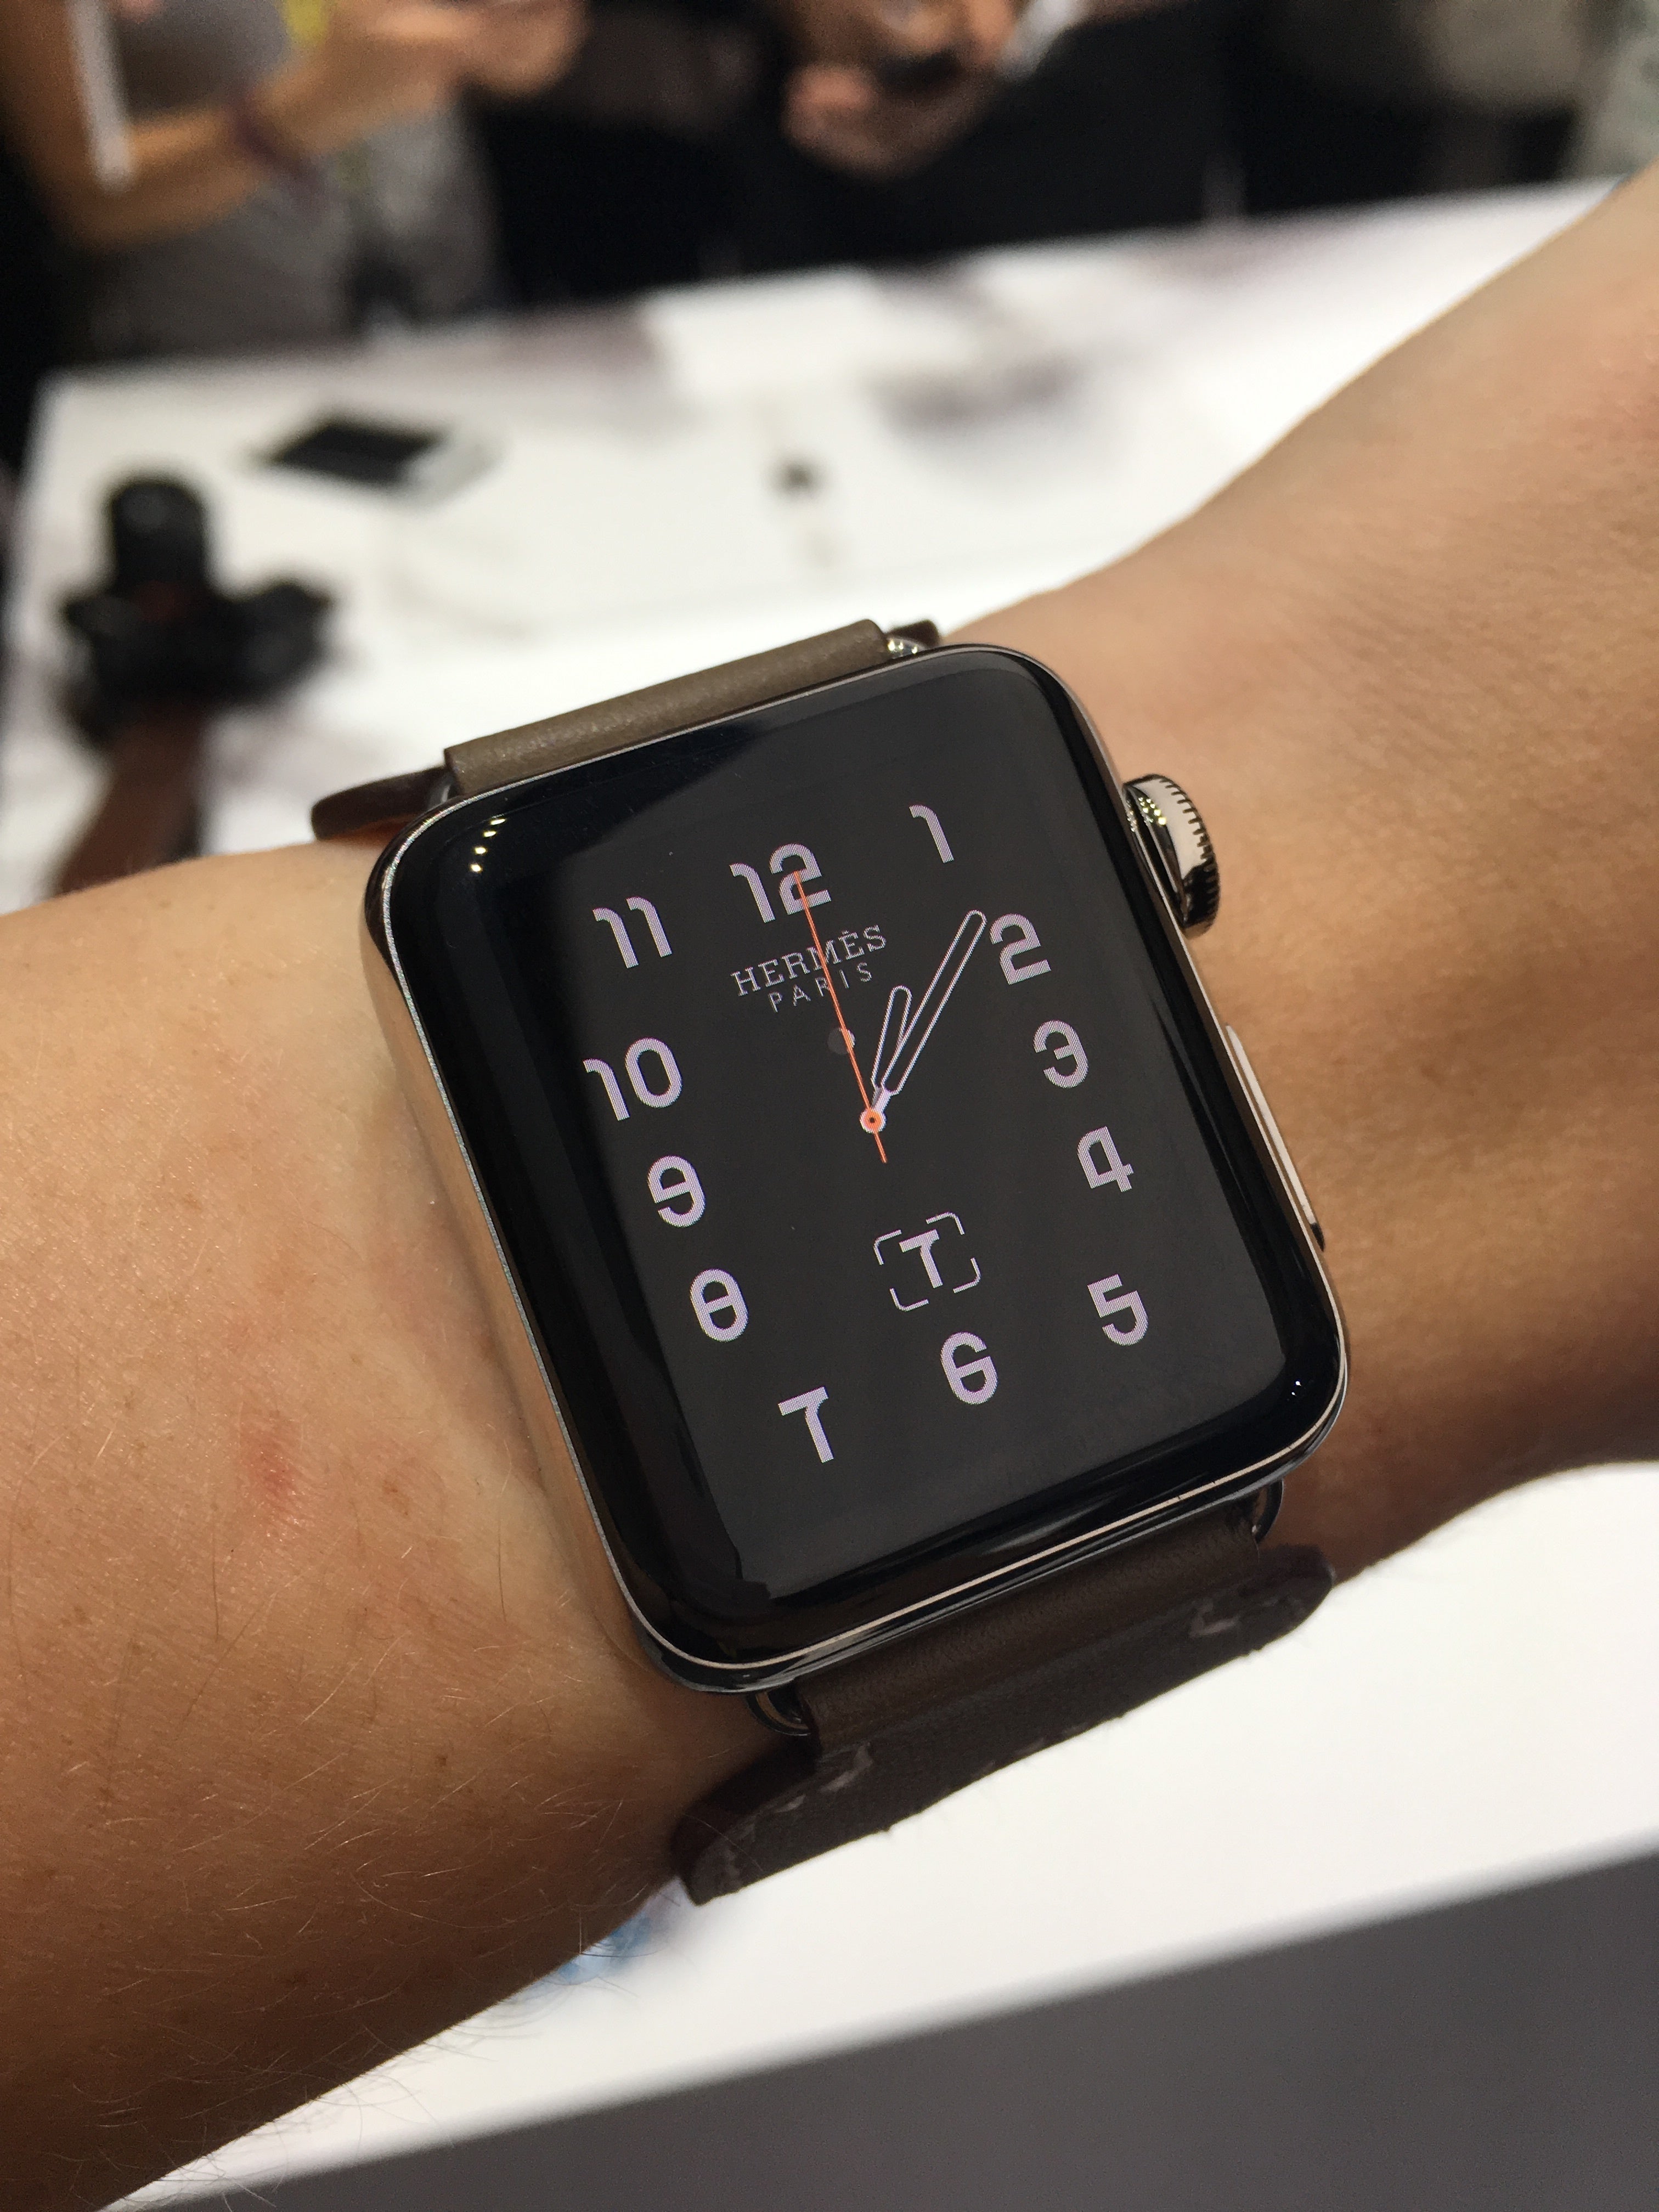 Hermes Watch Face Apple Watch 4 Deals, 50% OFF | lagence.tv